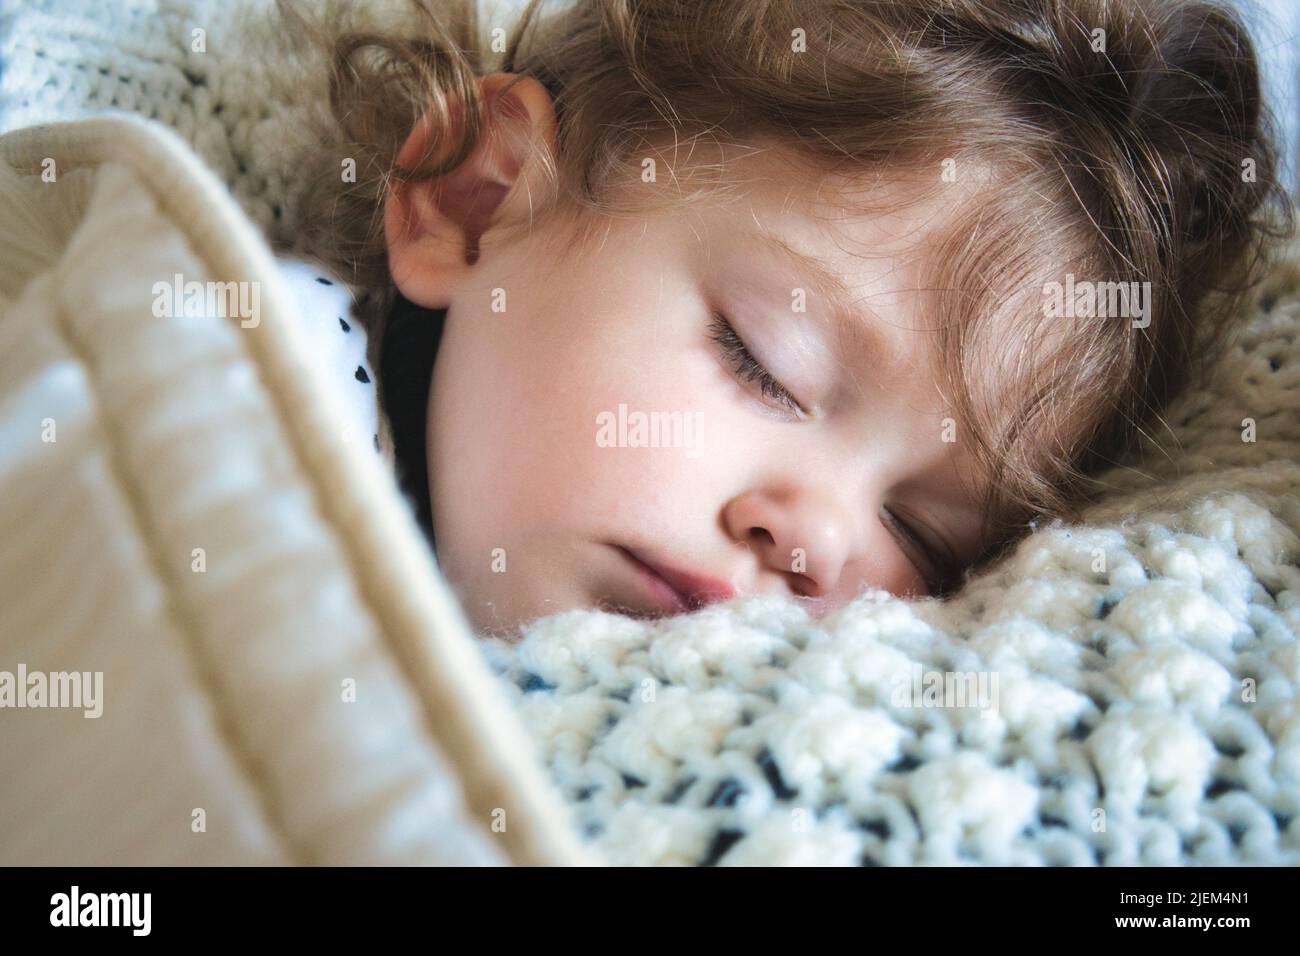 Nahaufnahme eines kleinen Mädchens, das friedlich in eine warme Decke gehüllt schläft Stockfoto